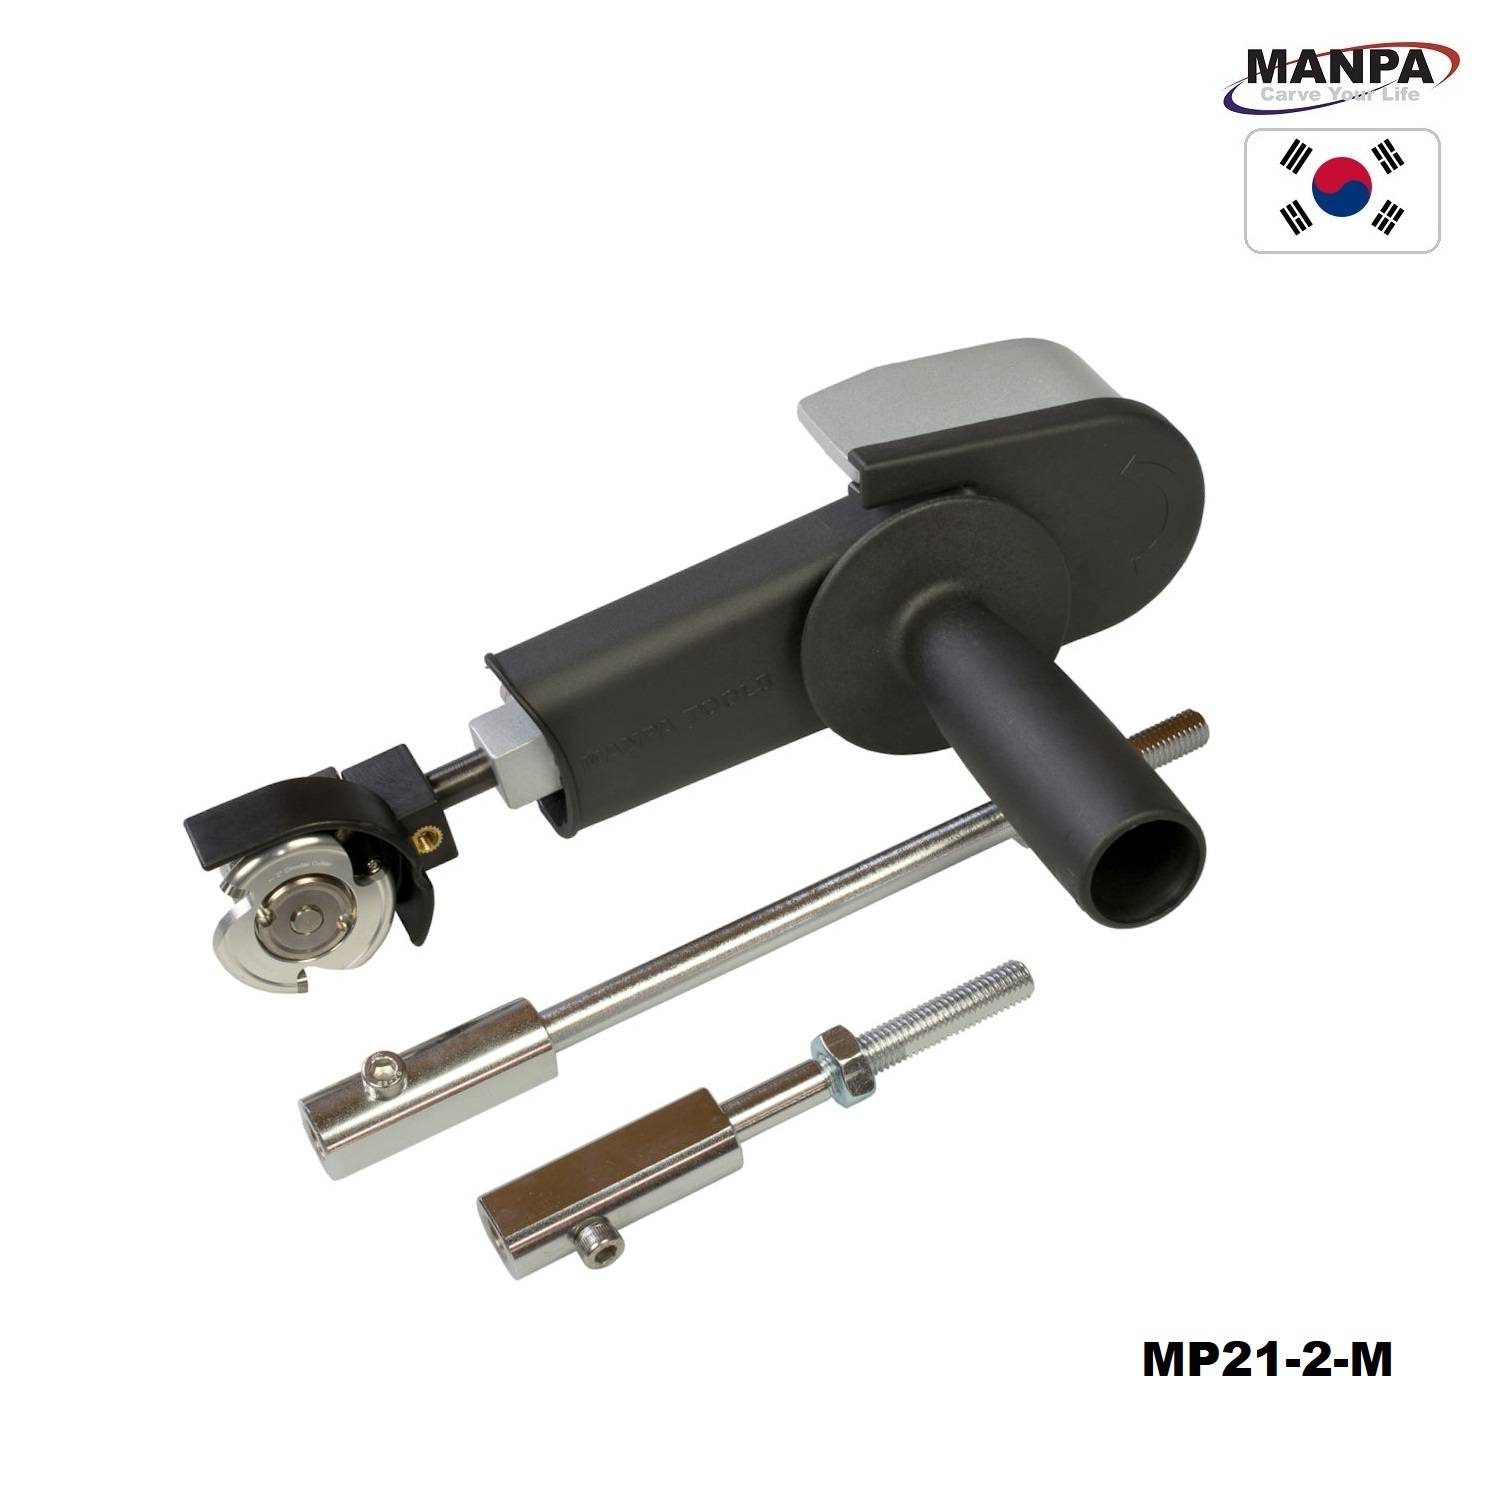 Manpa-Belt-Cutter-50-mm-full-set-MP21-2-